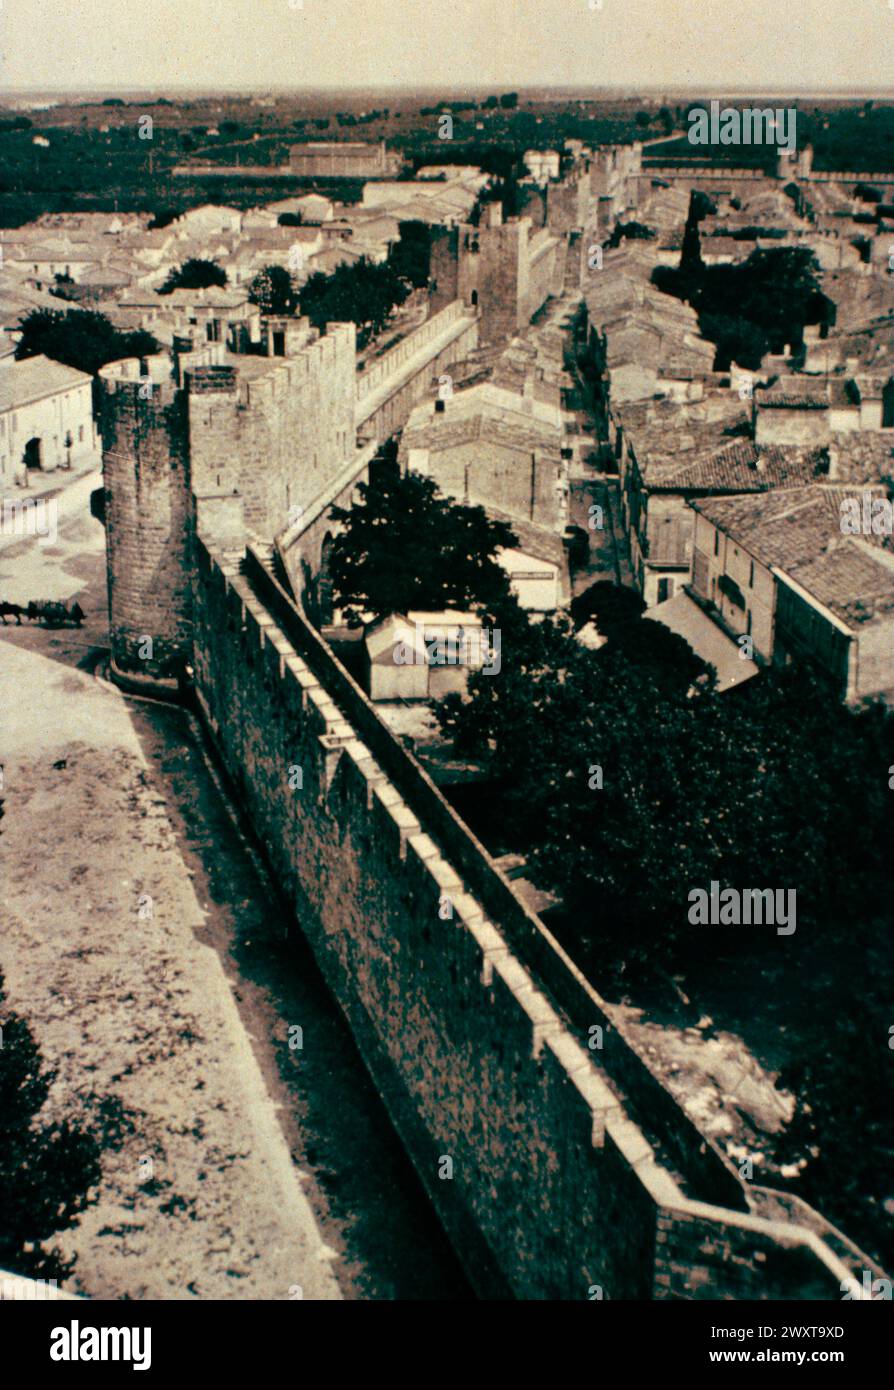 La fortification d'Aigues mortes, France des années 1980 Banque D'Images